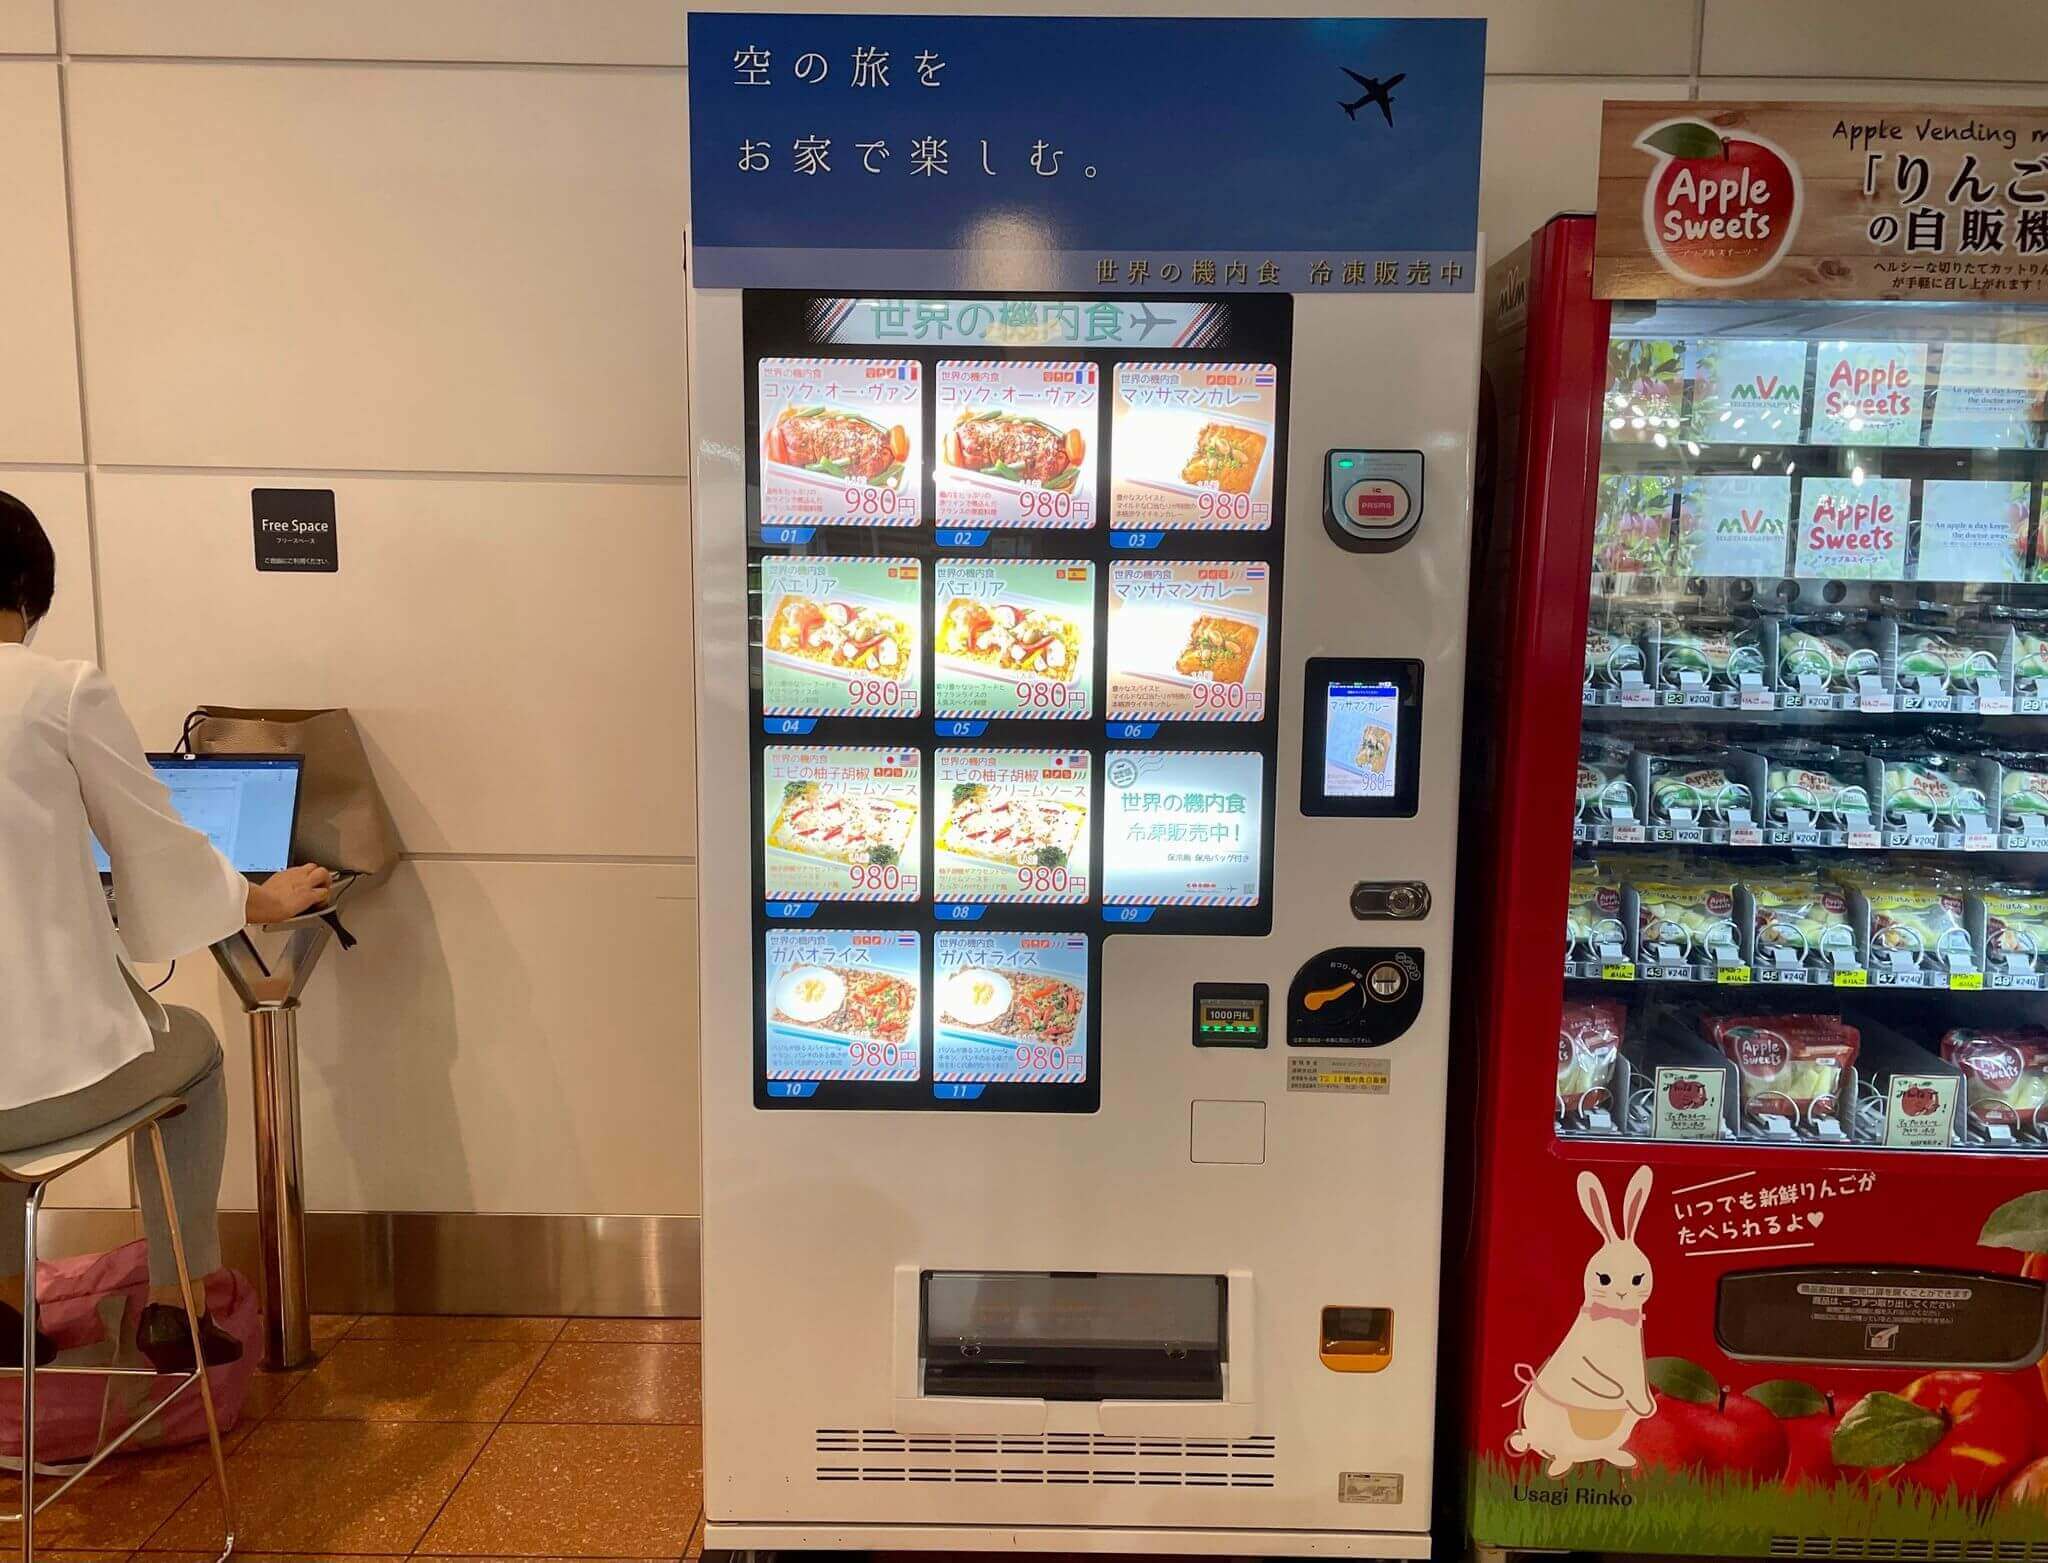 羽田空港第2ターミナル1階に設置されていた「世界の機内食」の自販機